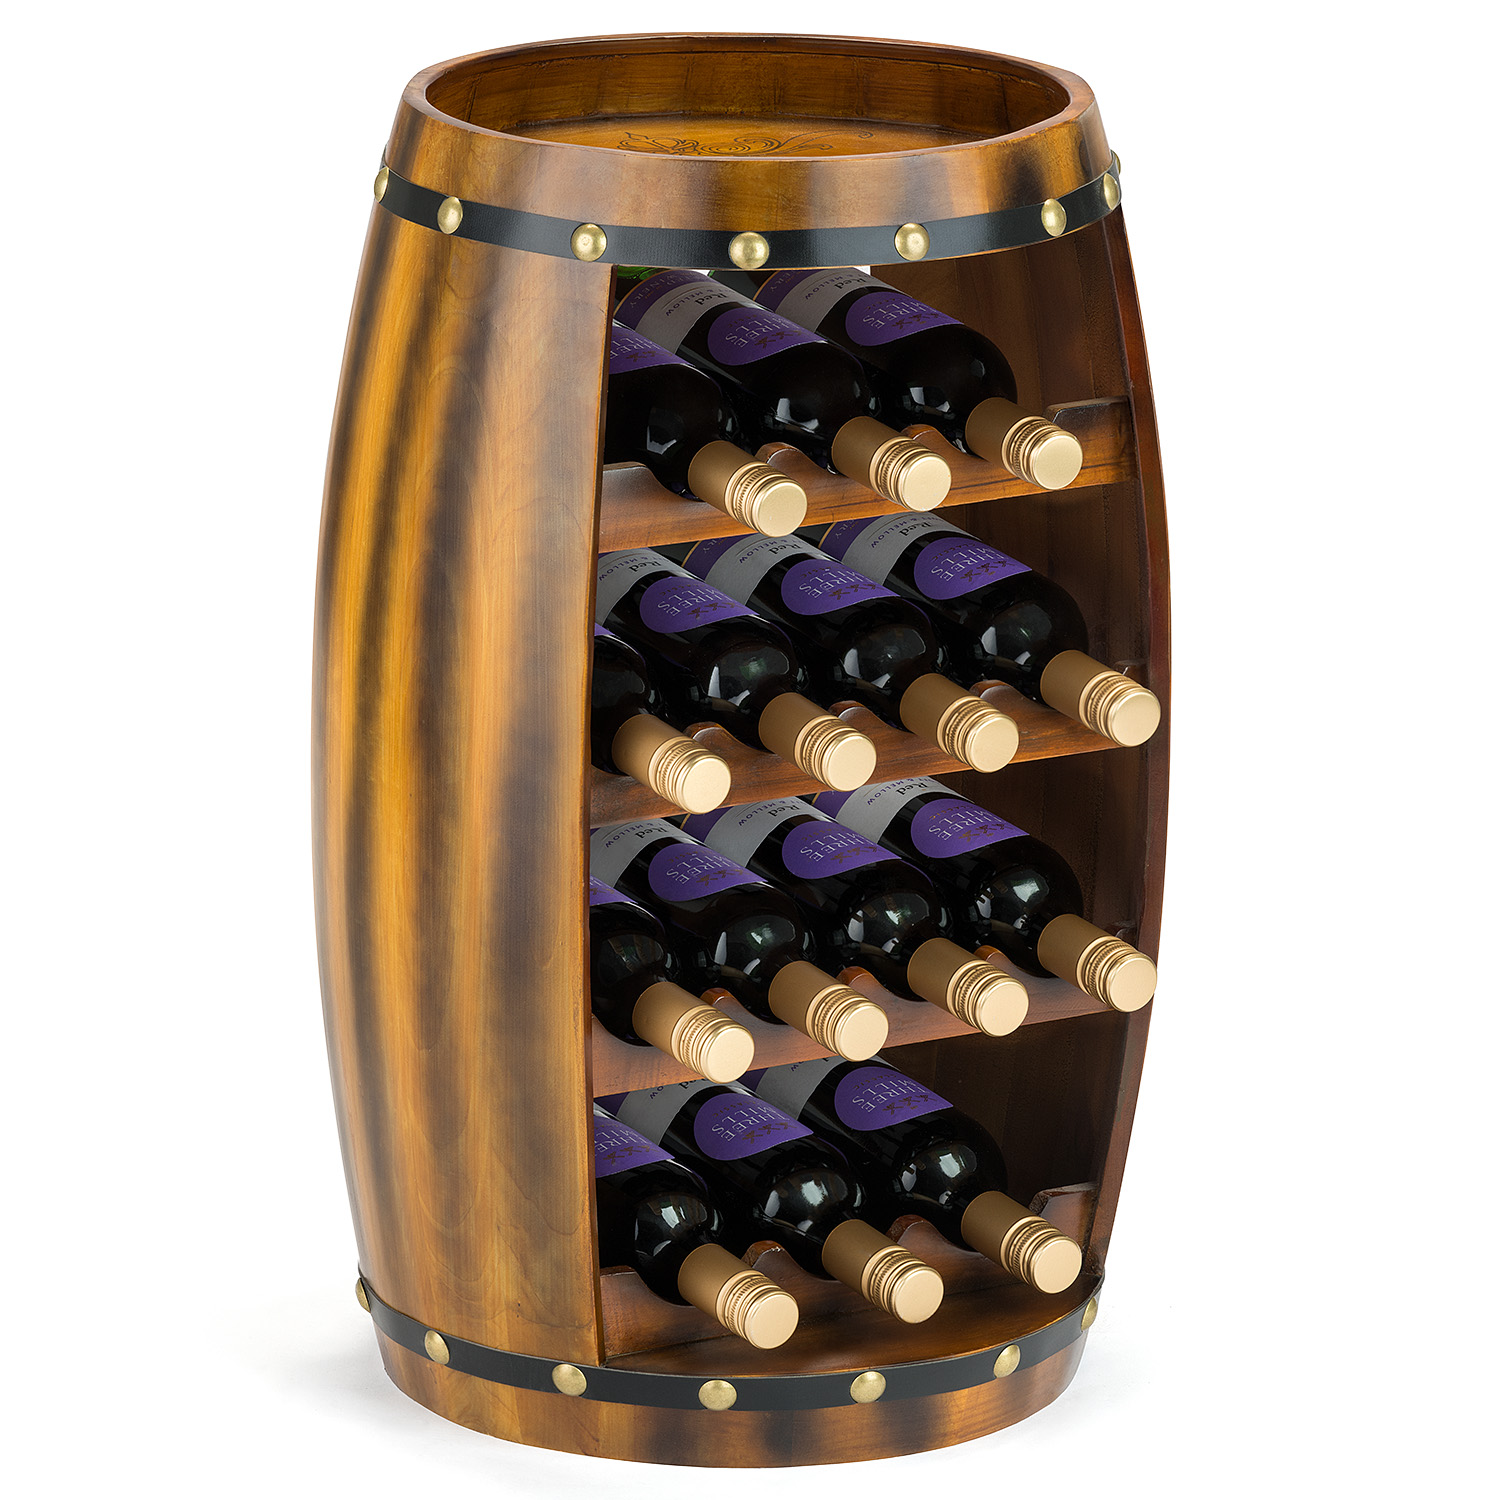 Wooden Barrels Barrel Stave Wine Bottle Holder